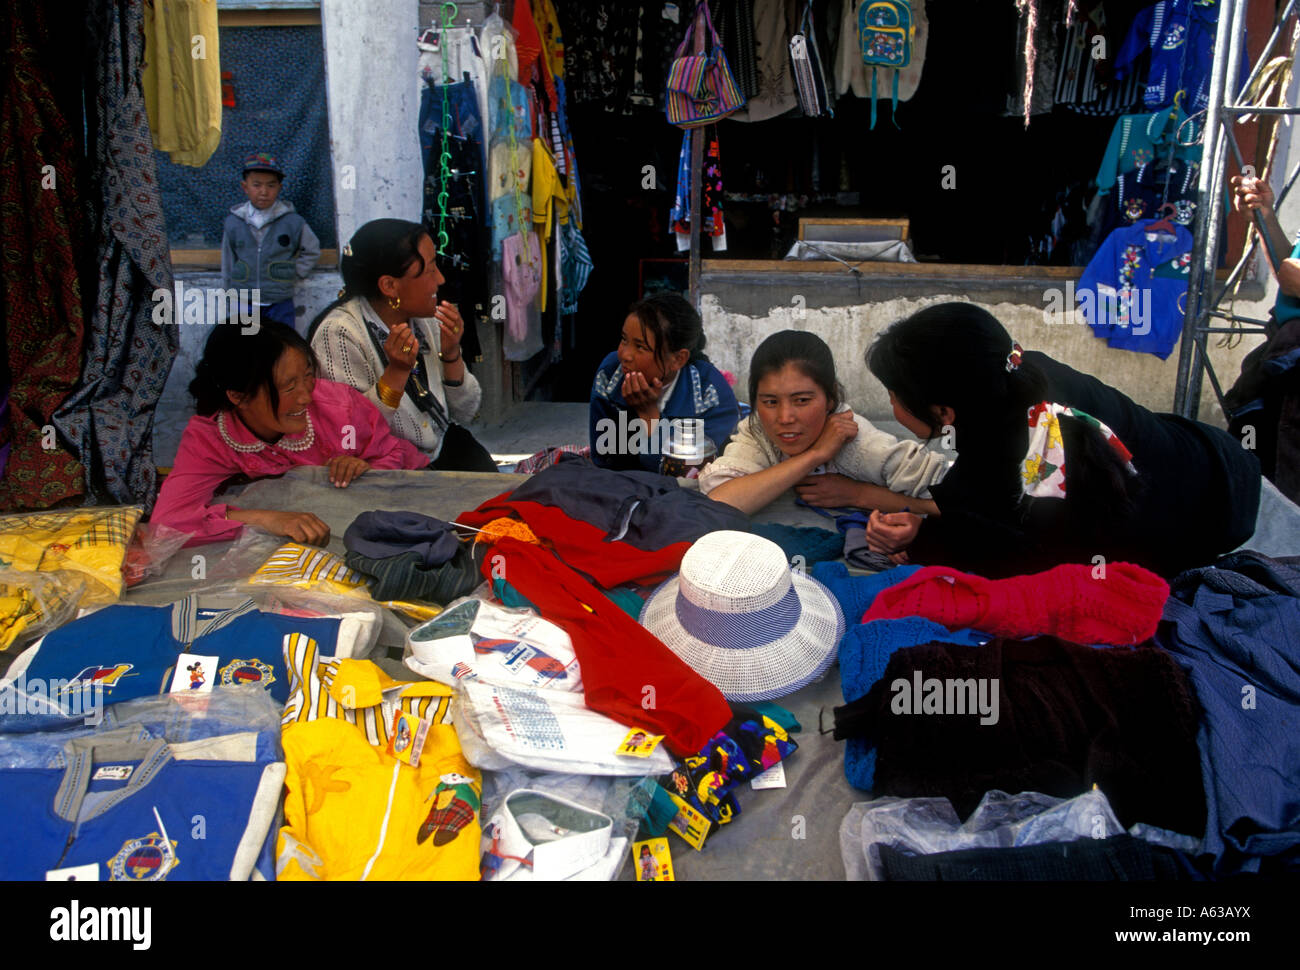 Las mujeres tibetanas, tibetana, las mujeres, los proveedores, la venta de de vestir, ropa calada, el mercado al aire libre, Tsedang, el Tíbet, la Región Autónoma del Tíbet, China, Asia Fotografía